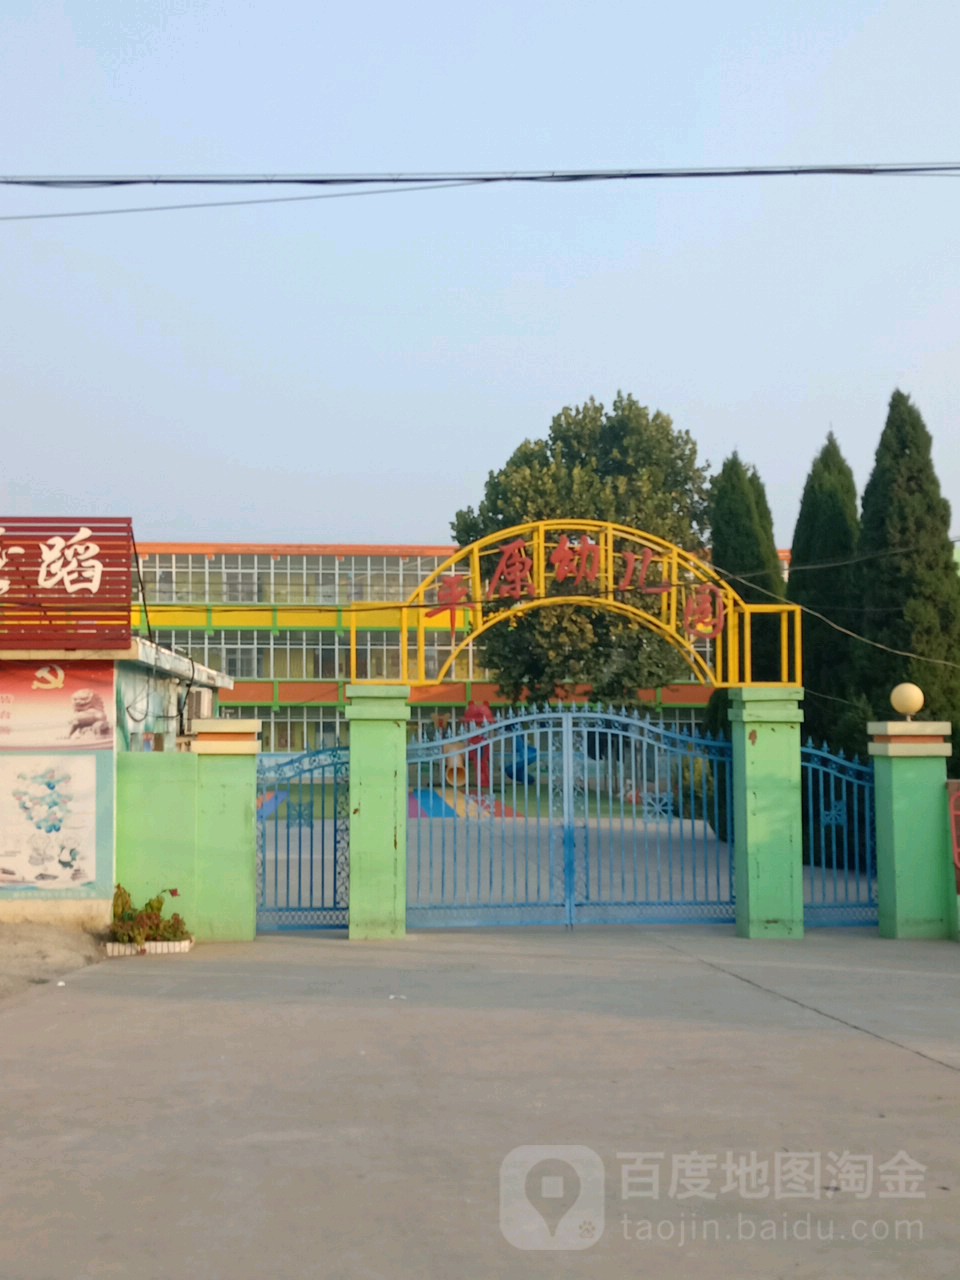 平原幼儿园的图片